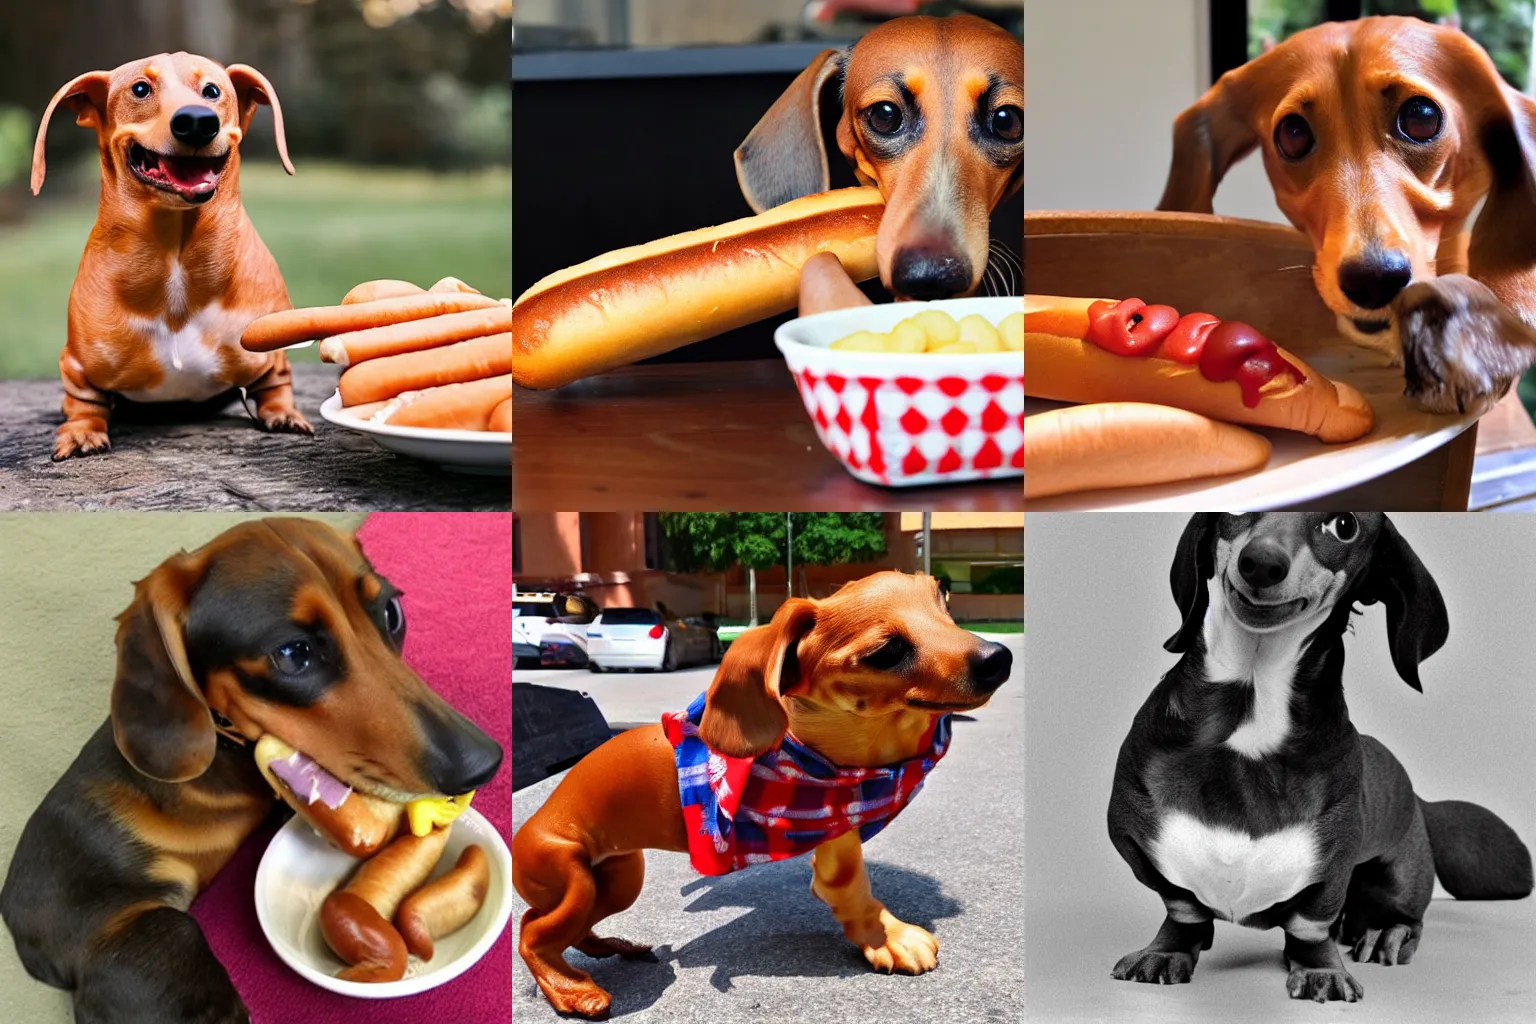 Prompt: weiner dog eating a hot dog